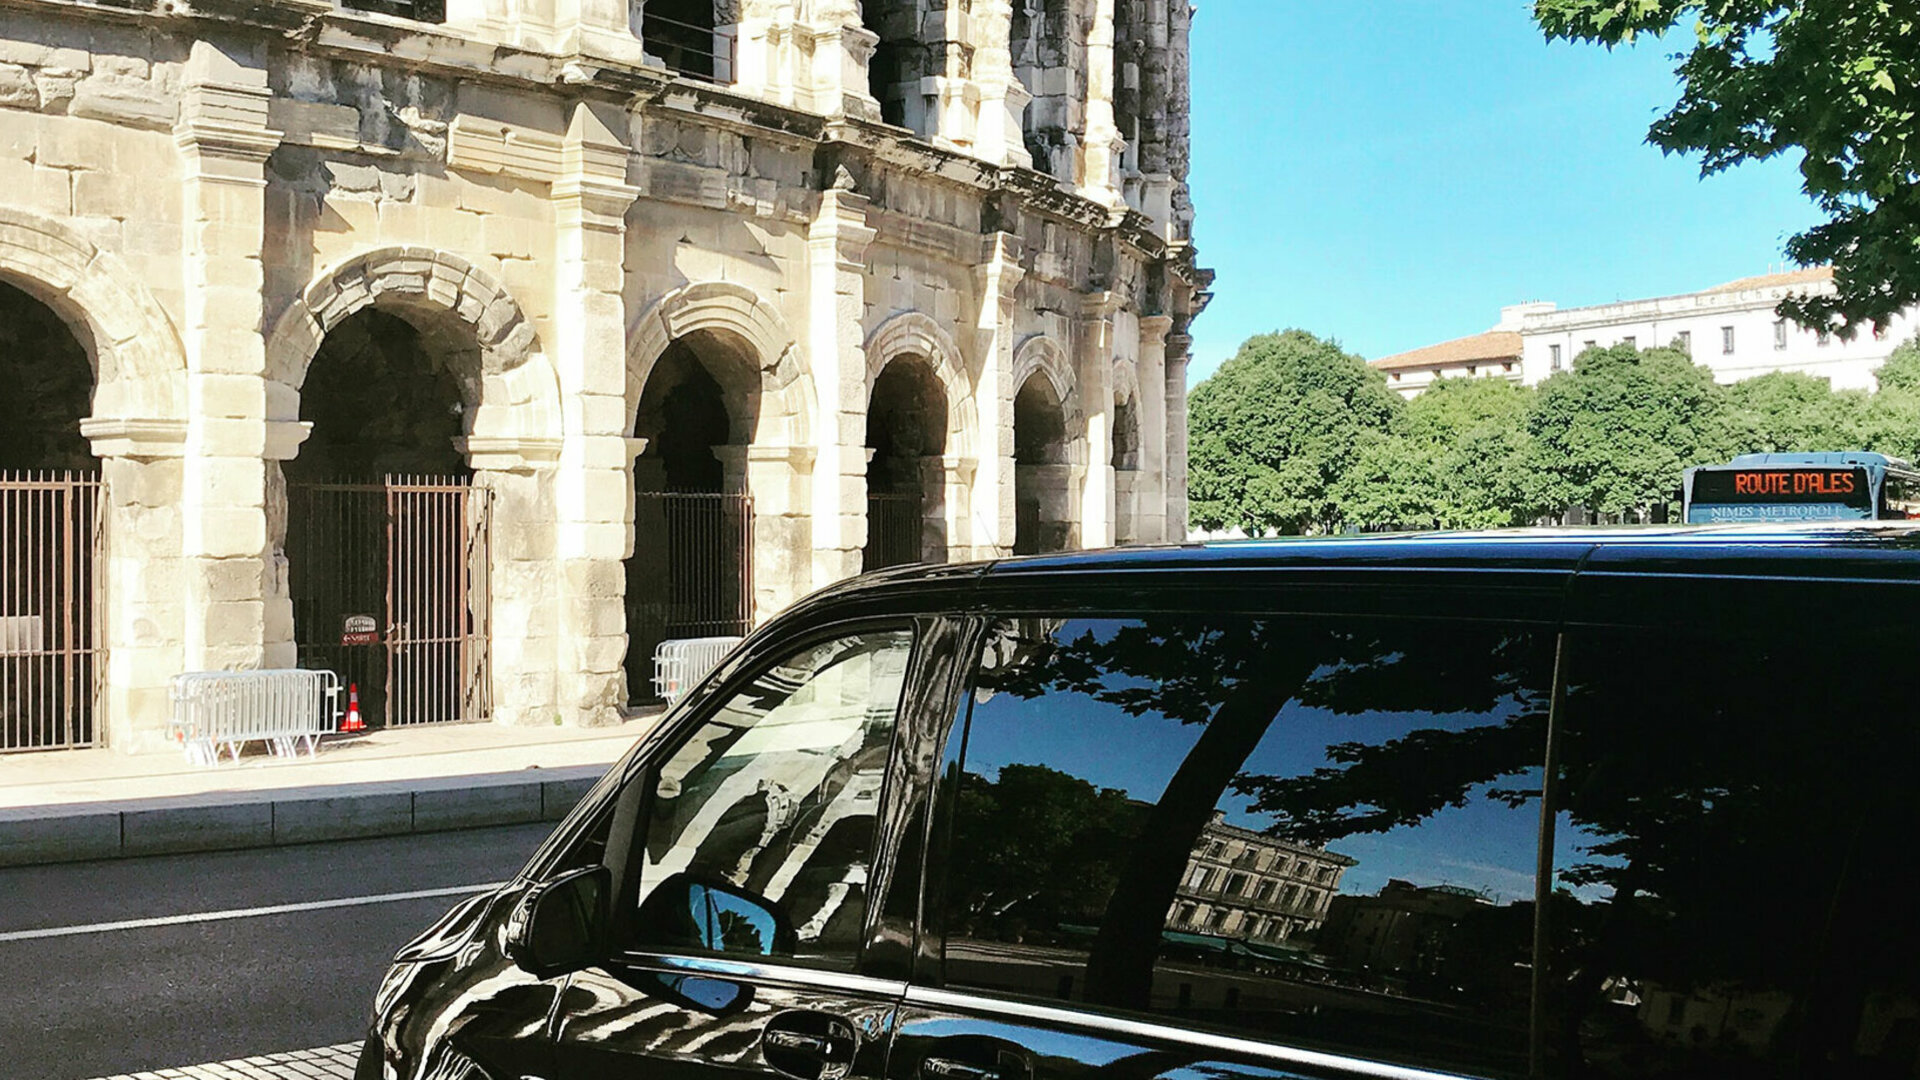 Prenez contact avec MYCAB LUXURY VTC chauffeur privé avec voiture de luxe pour vos transfert gare et aéroports dans le Sud de la France